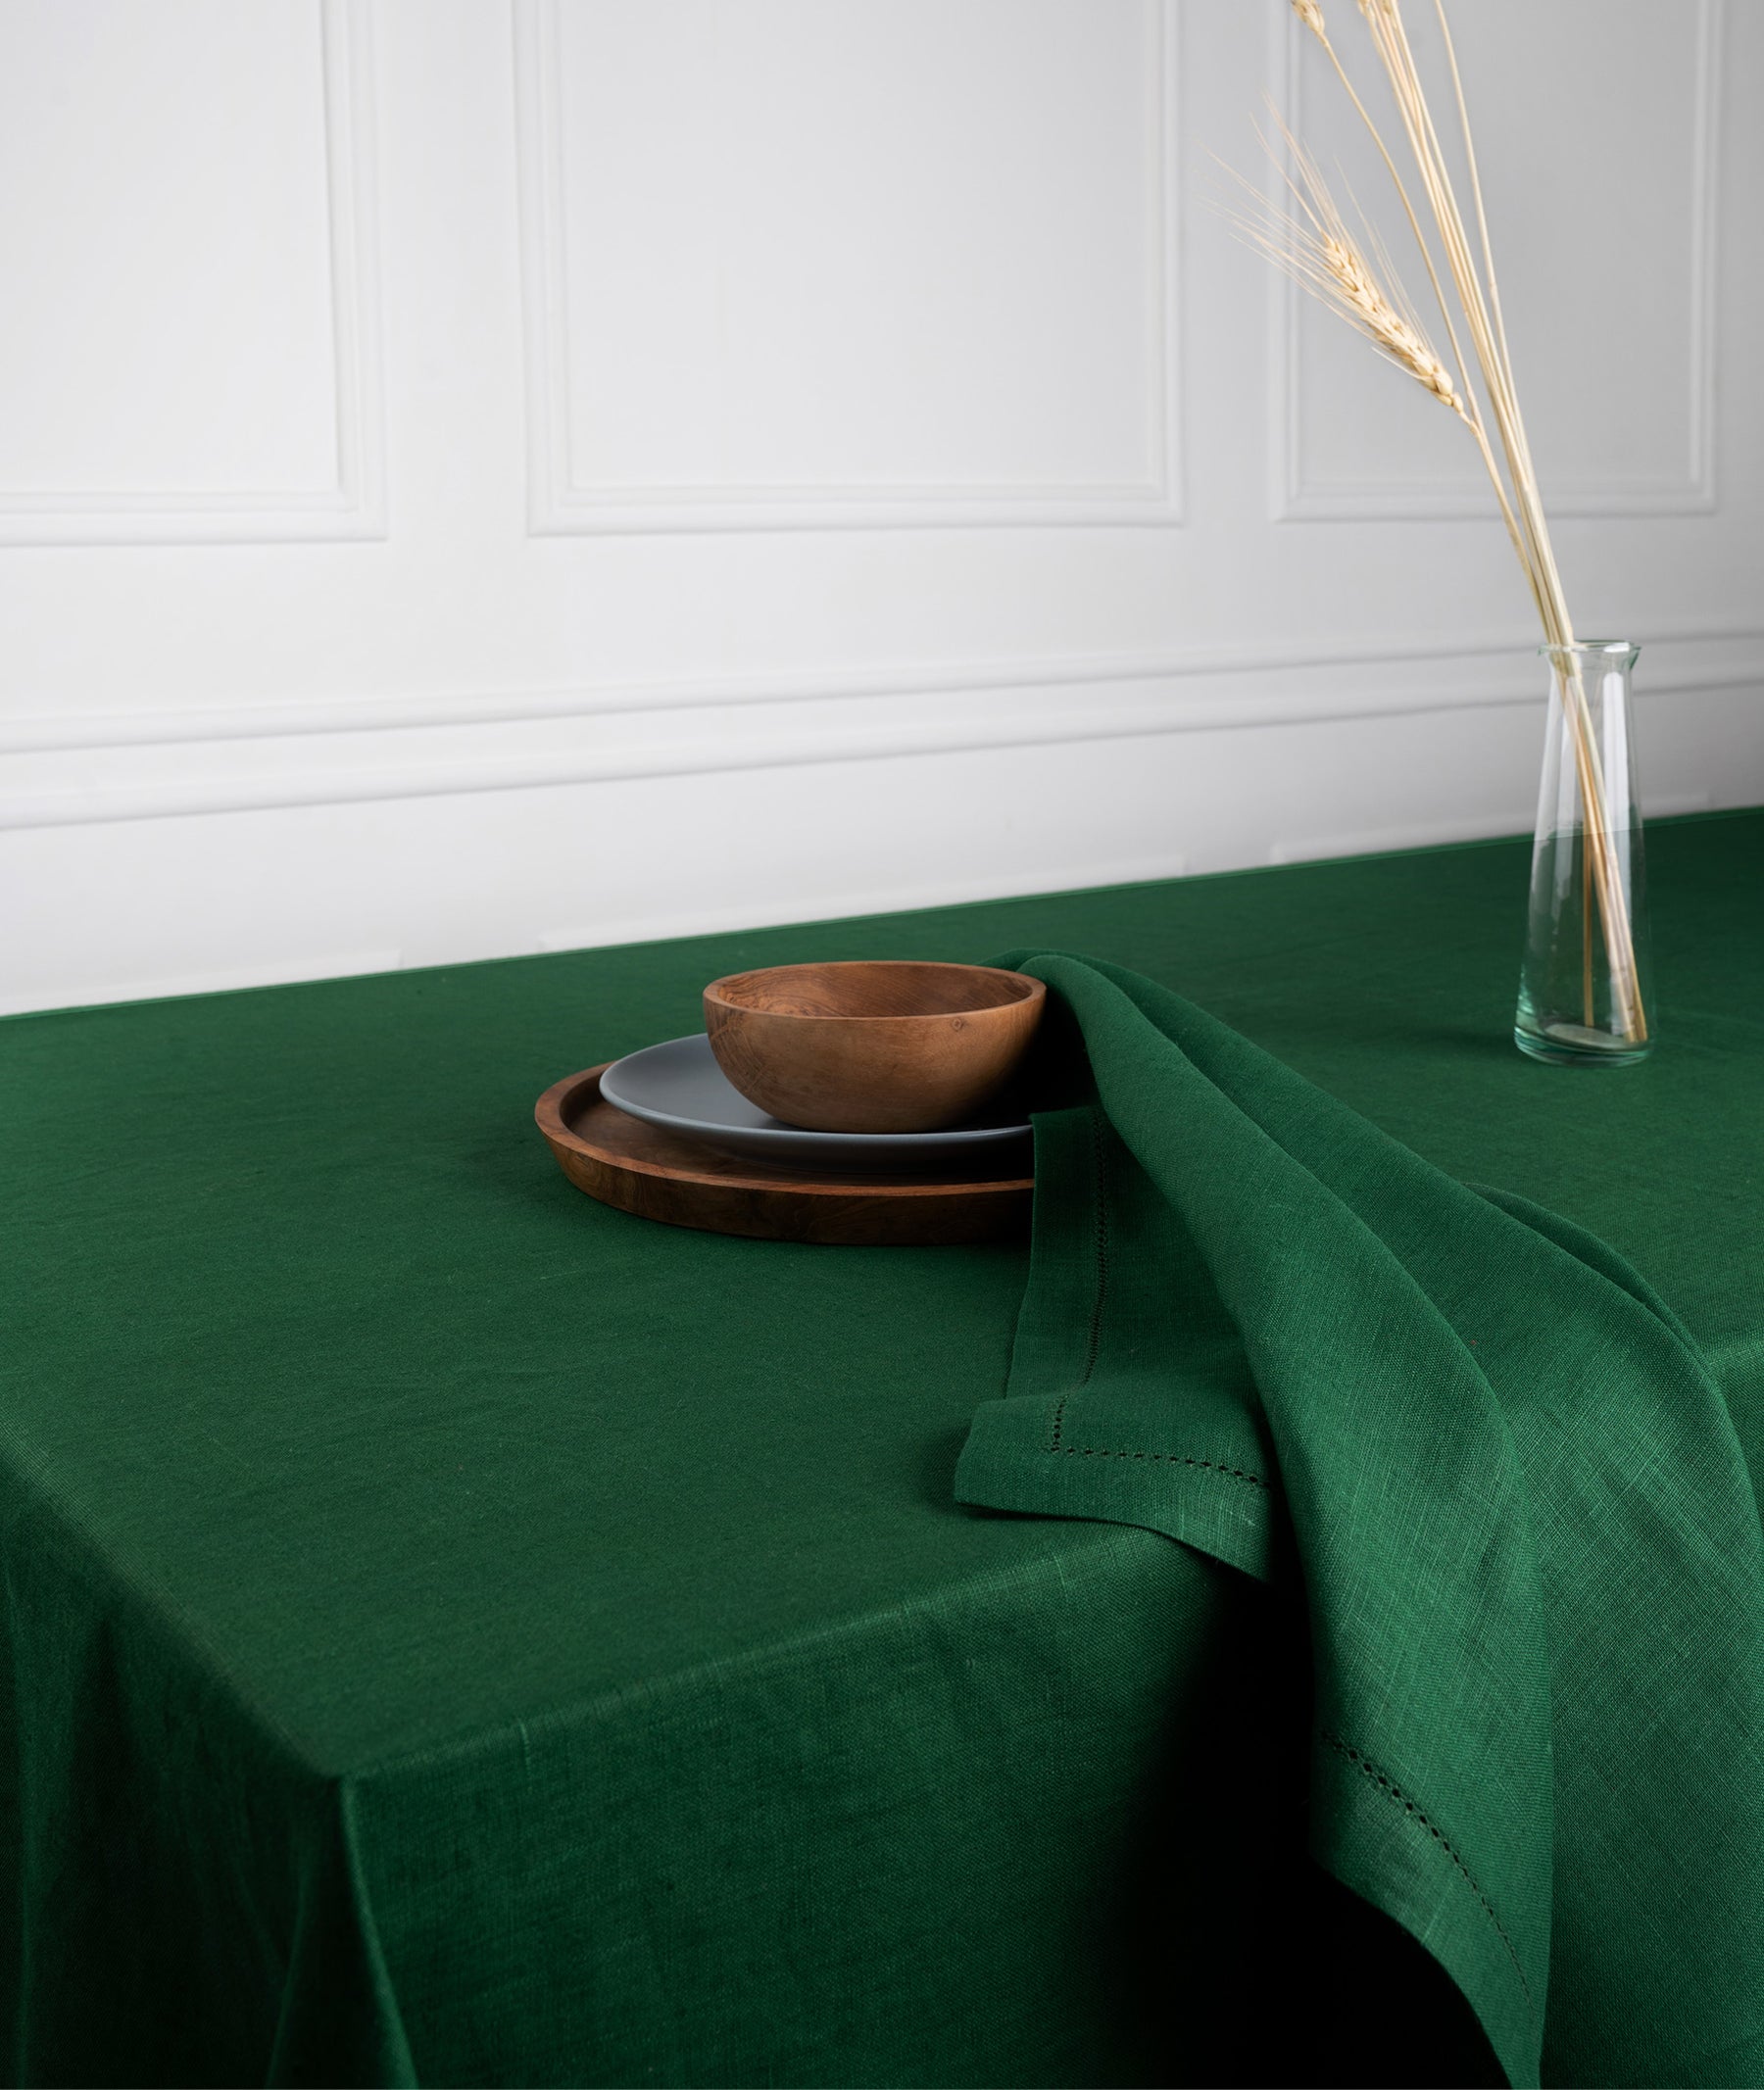 Eden Green Linen Tablecloth - Hemstitch